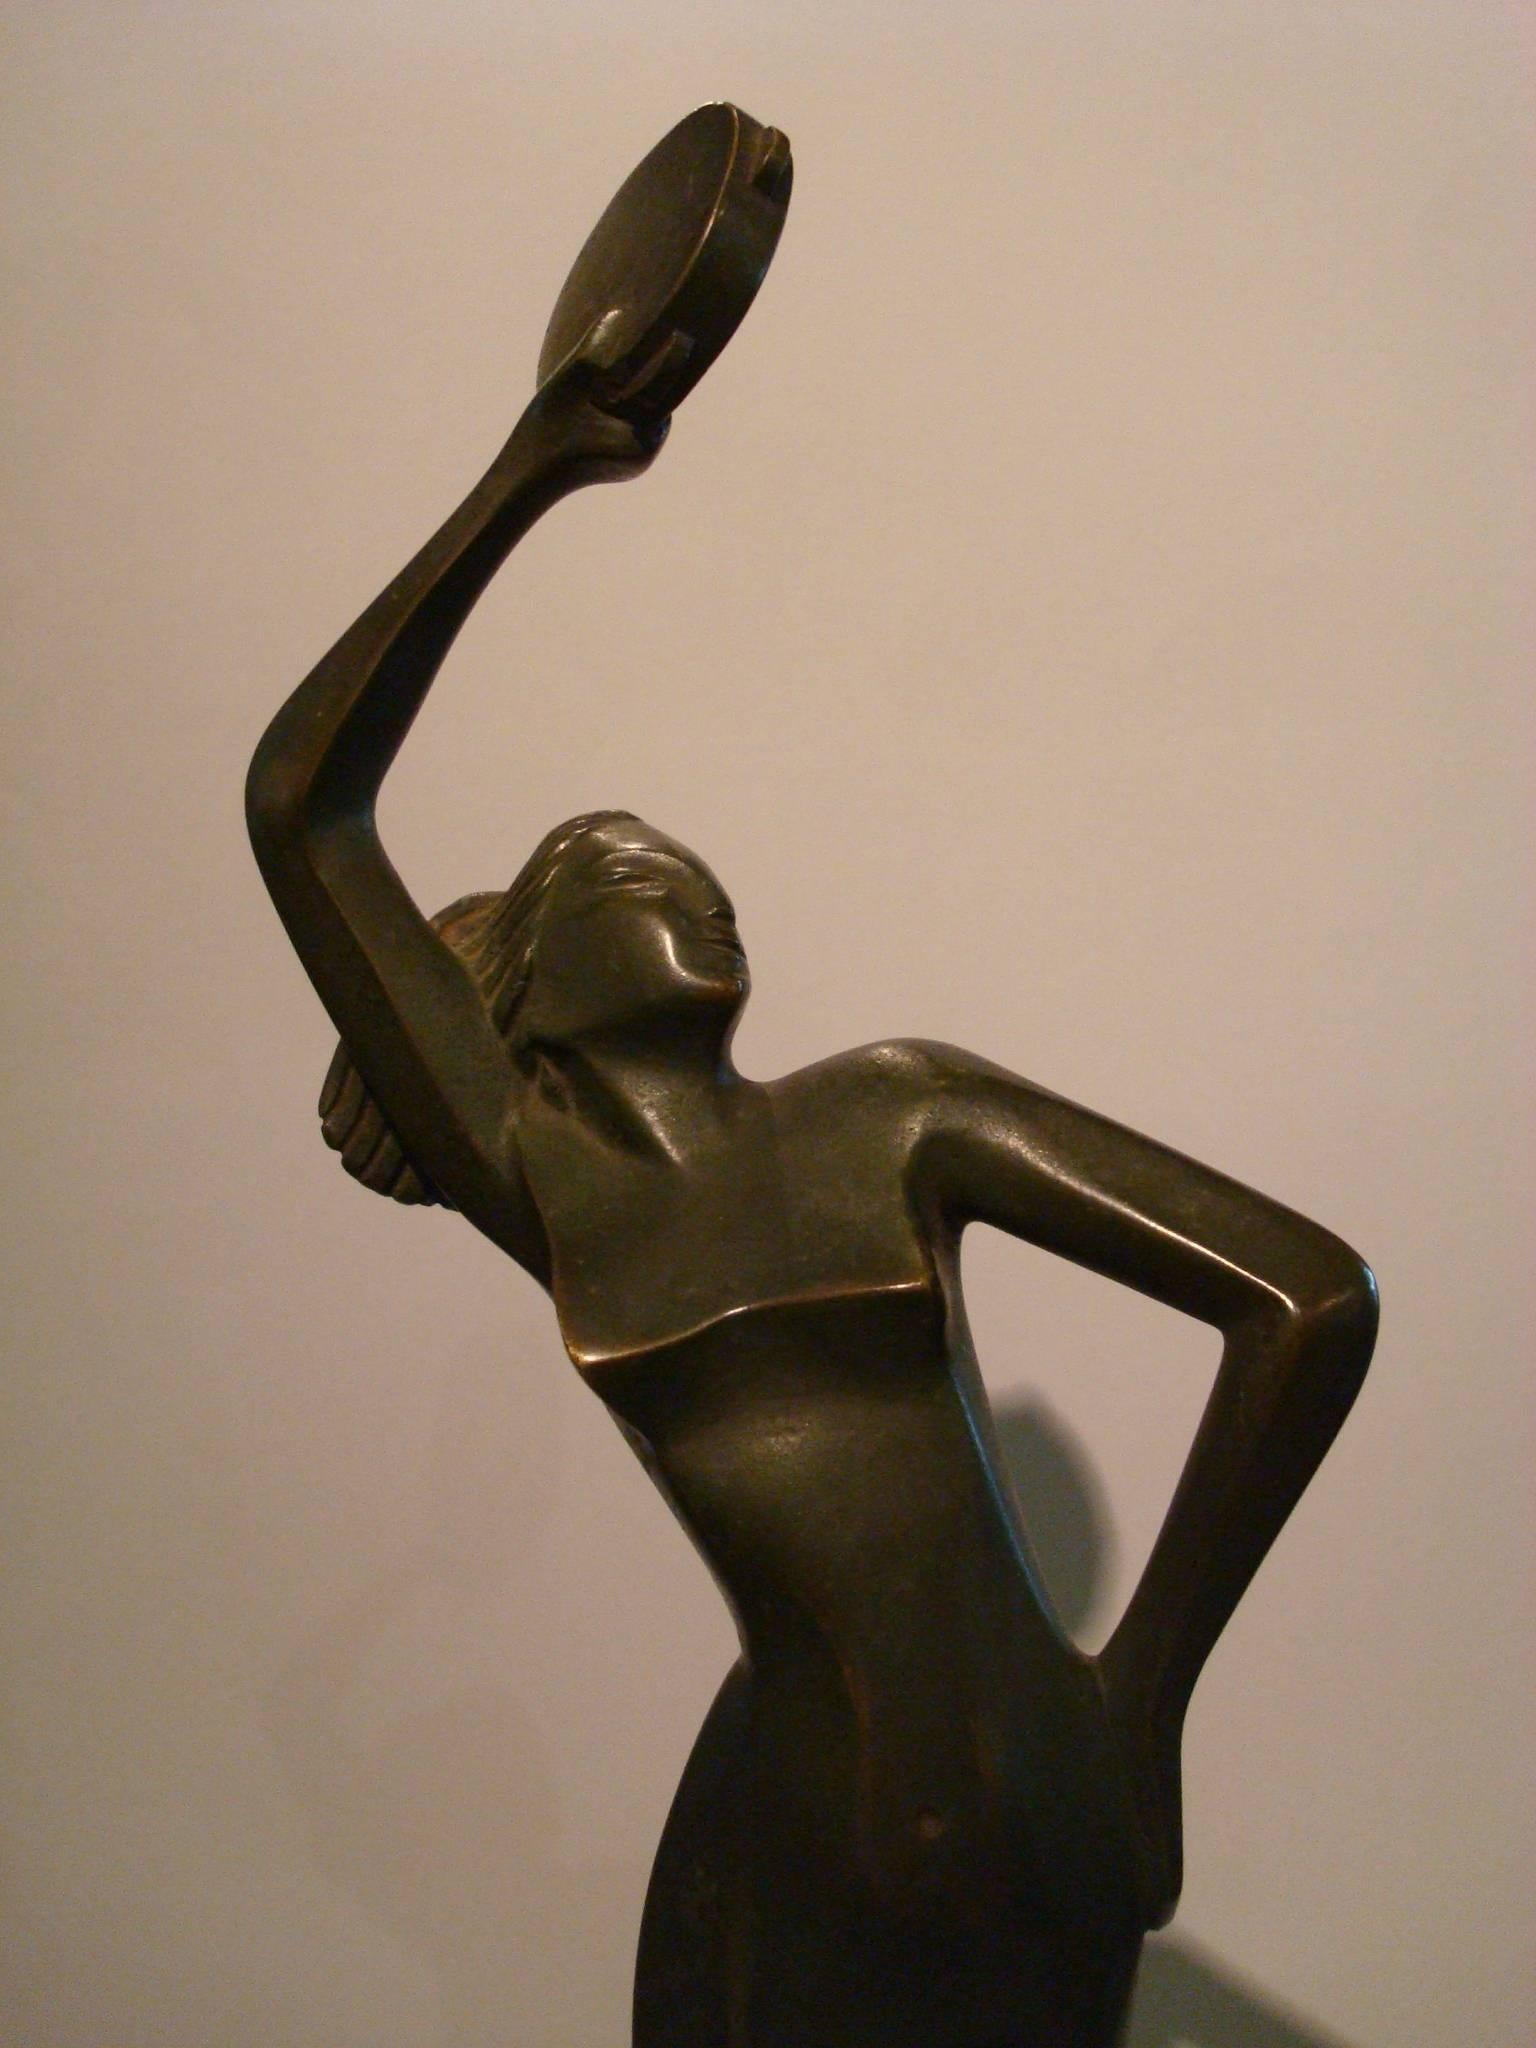 Art Deco Italienische Figur einer Frau, die mit einer Musik tanzt  Instrument. 
Skulptur eines tanzenden nackten Mädchens. Bronze mit dunkelgrüner Patina.
Montiert auf einem Marmorsockel.